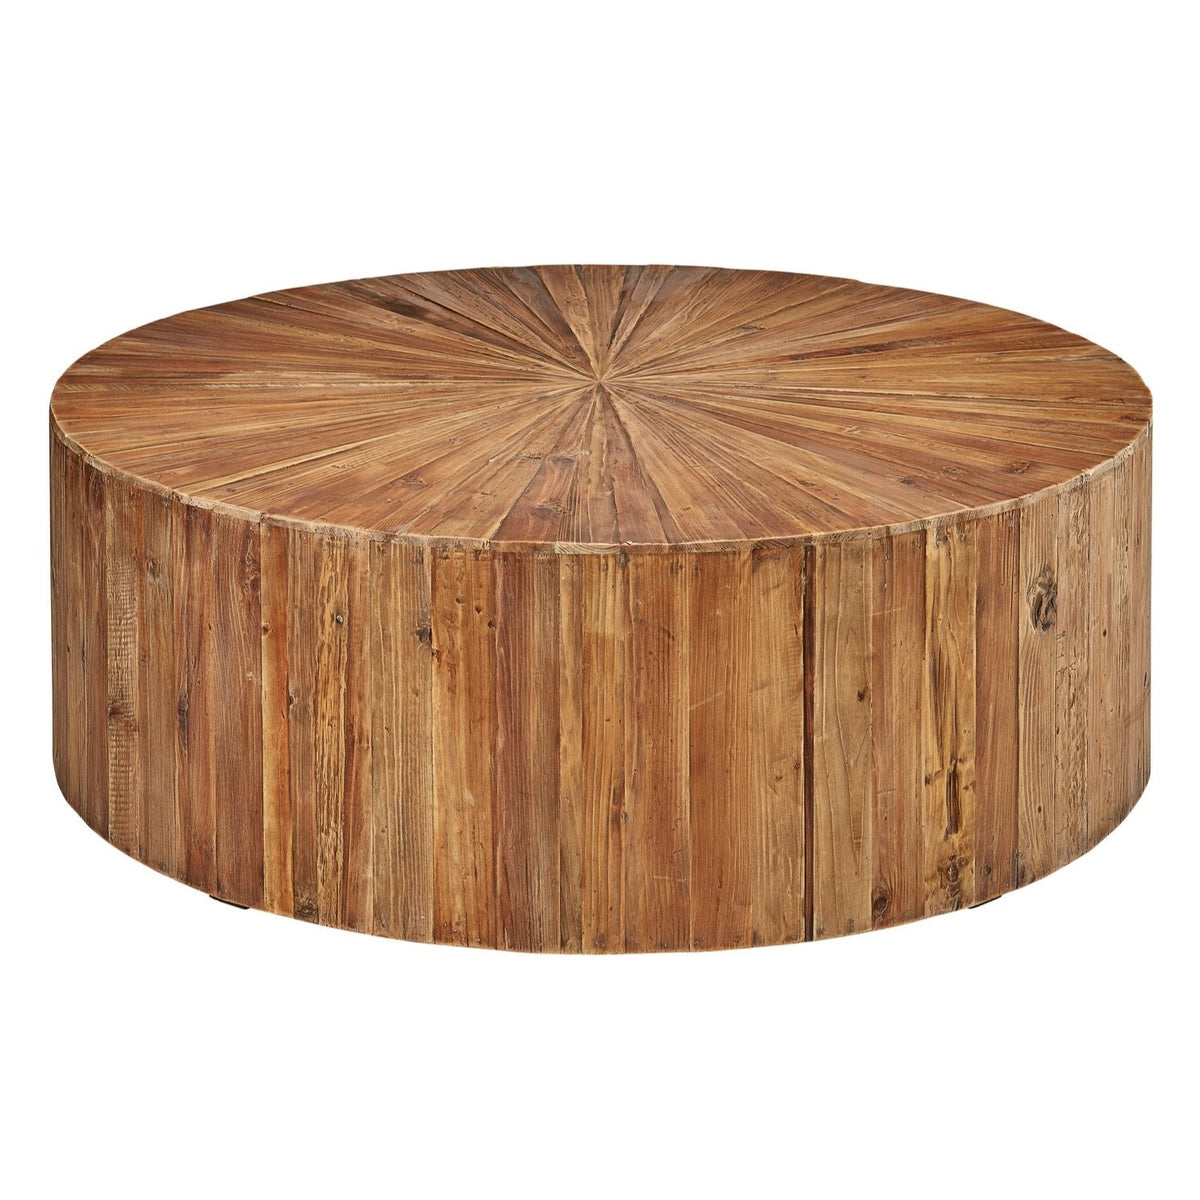 Sunburst Reclaimed Wood Coffee Table